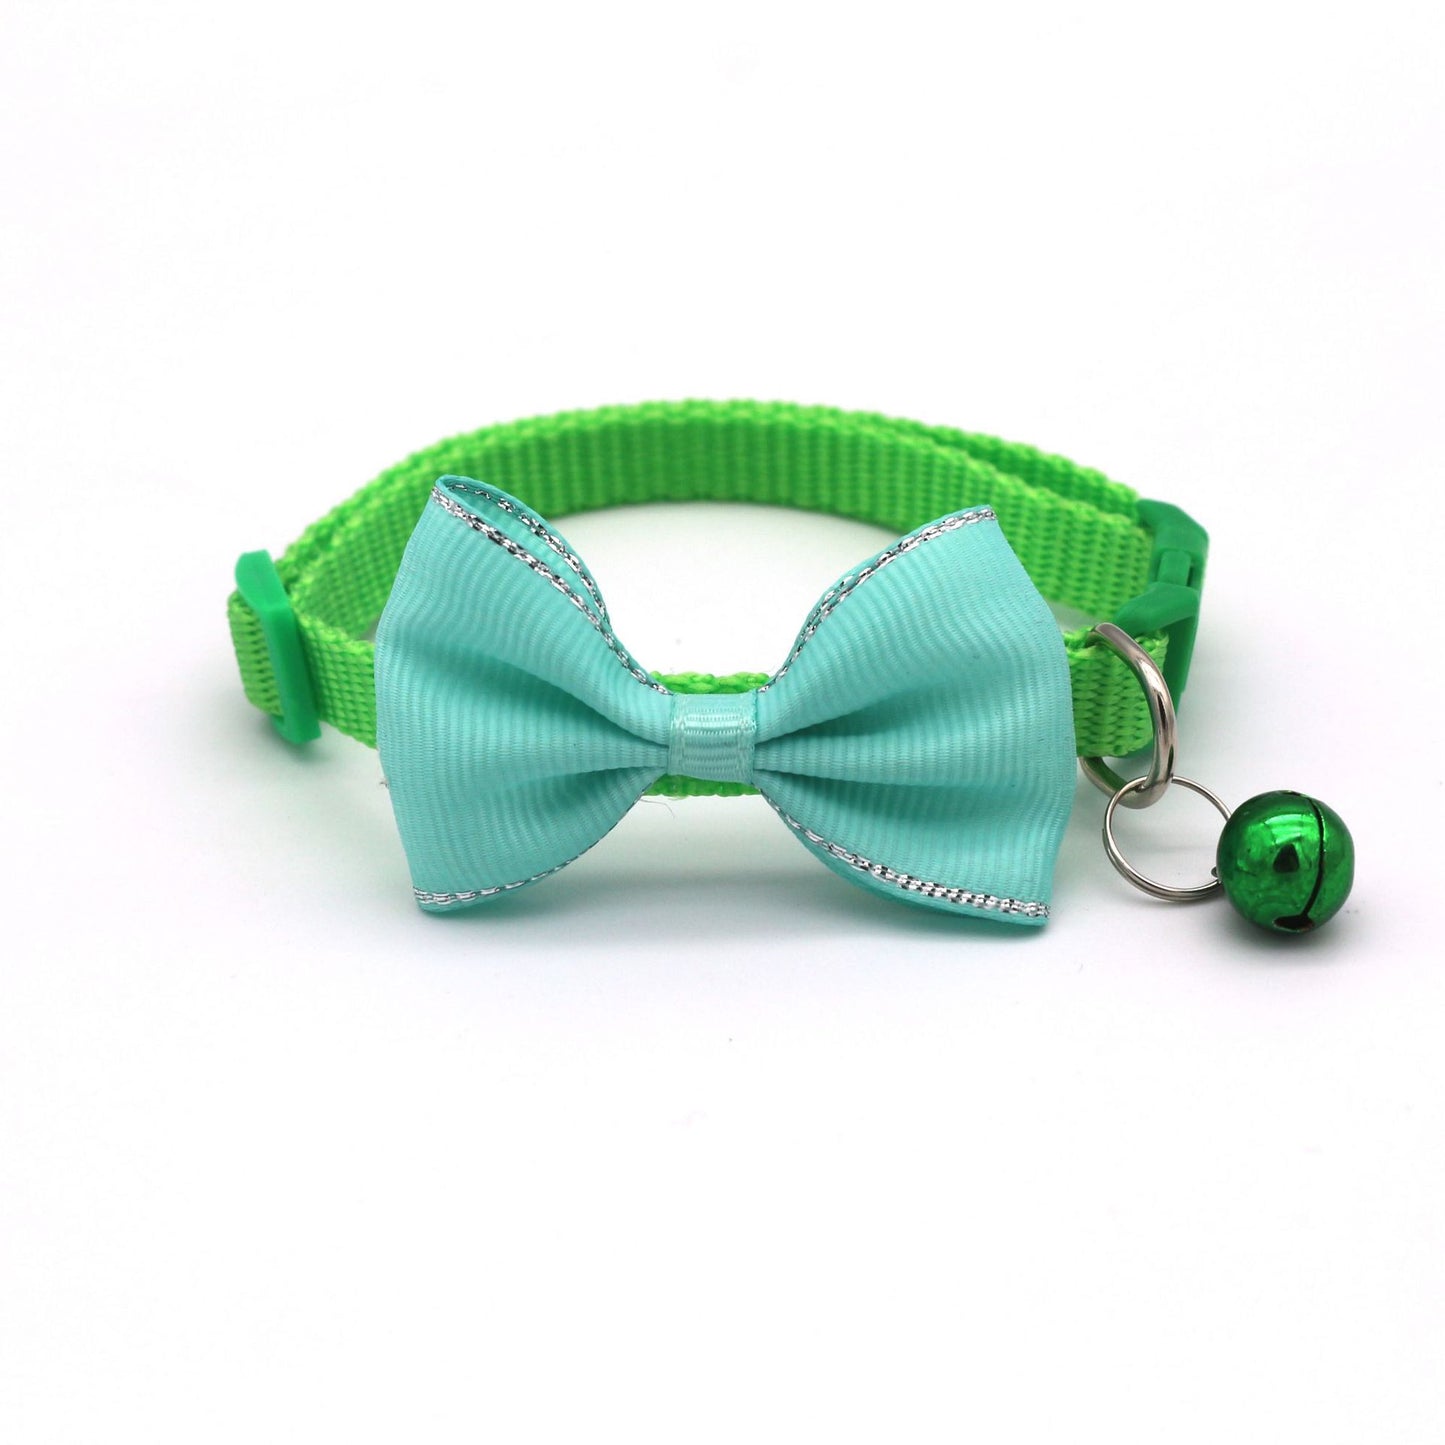 Strik en bellen halsband in groen